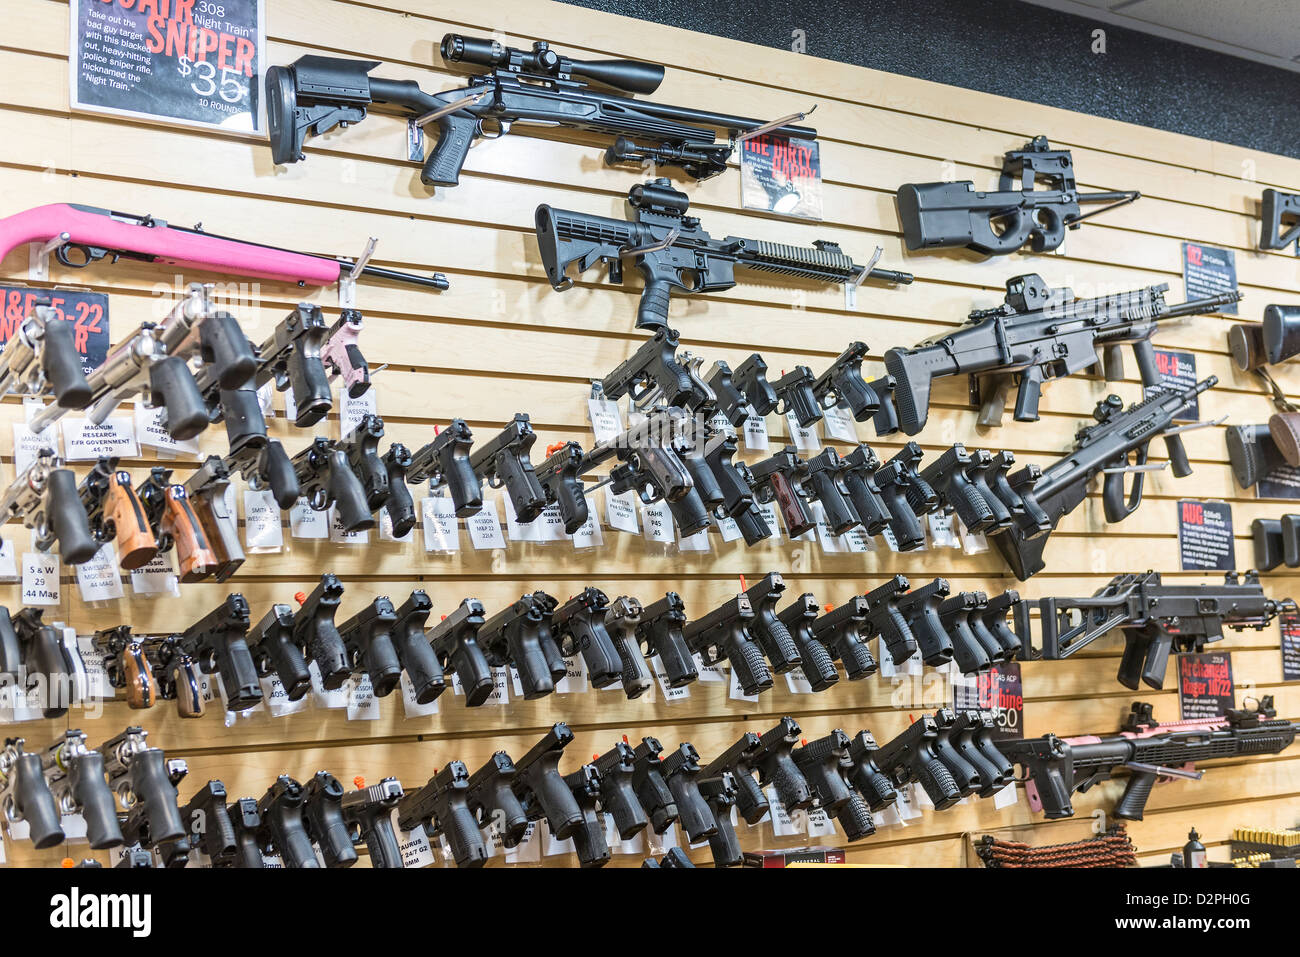 Una gran variedad de pistolas, rifles y armas en un almacén de la pistola. Foto de stock